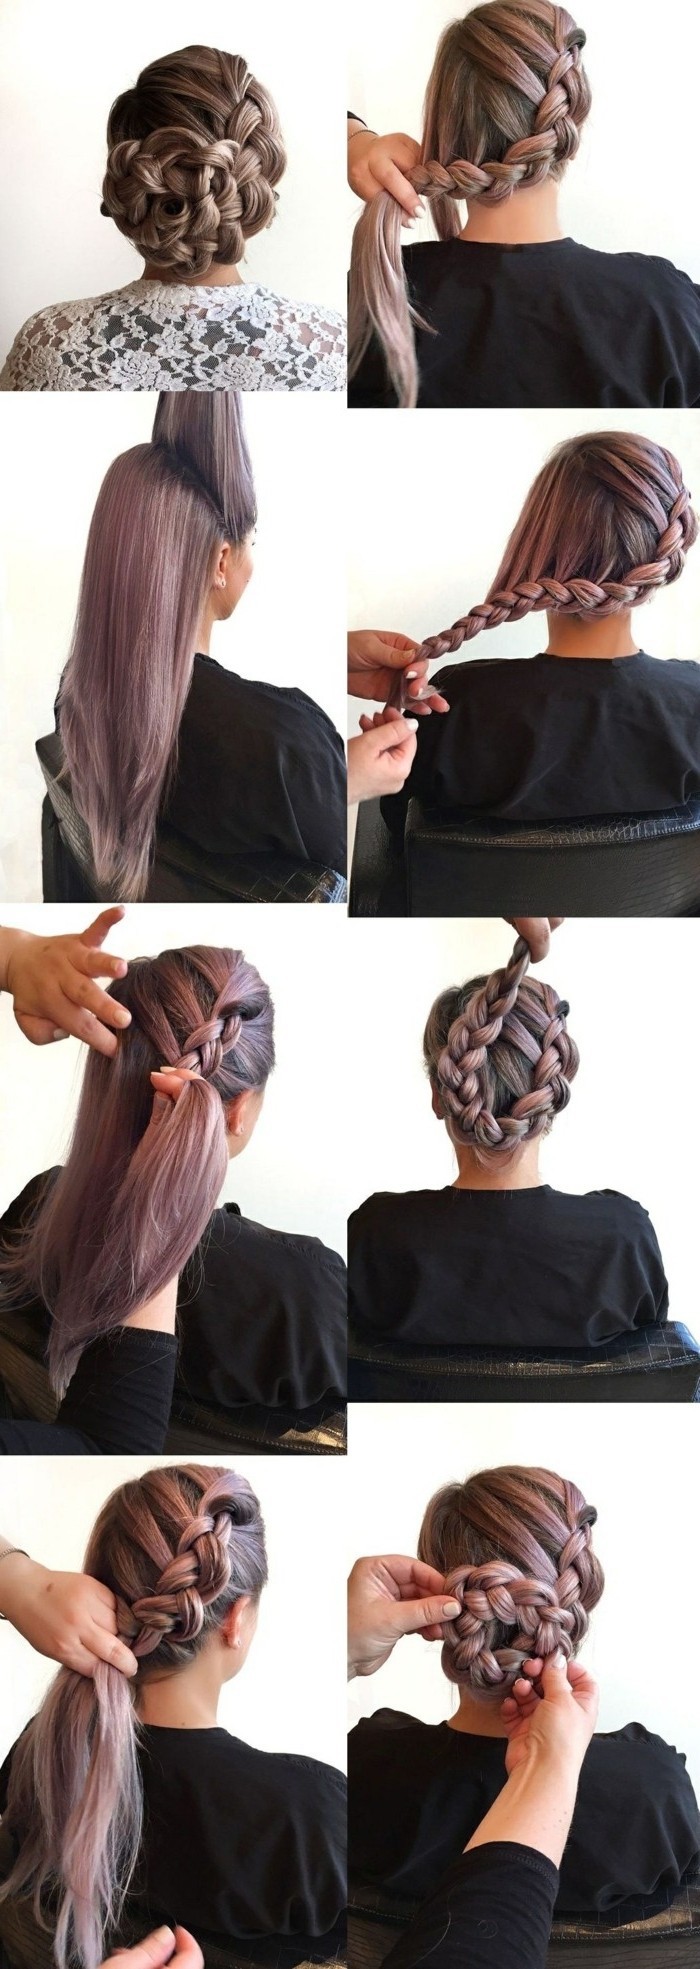 tresse de côté volumineuse transformé en chignon tressé, coiffure élégante et originale sur cheveux colorés en violet